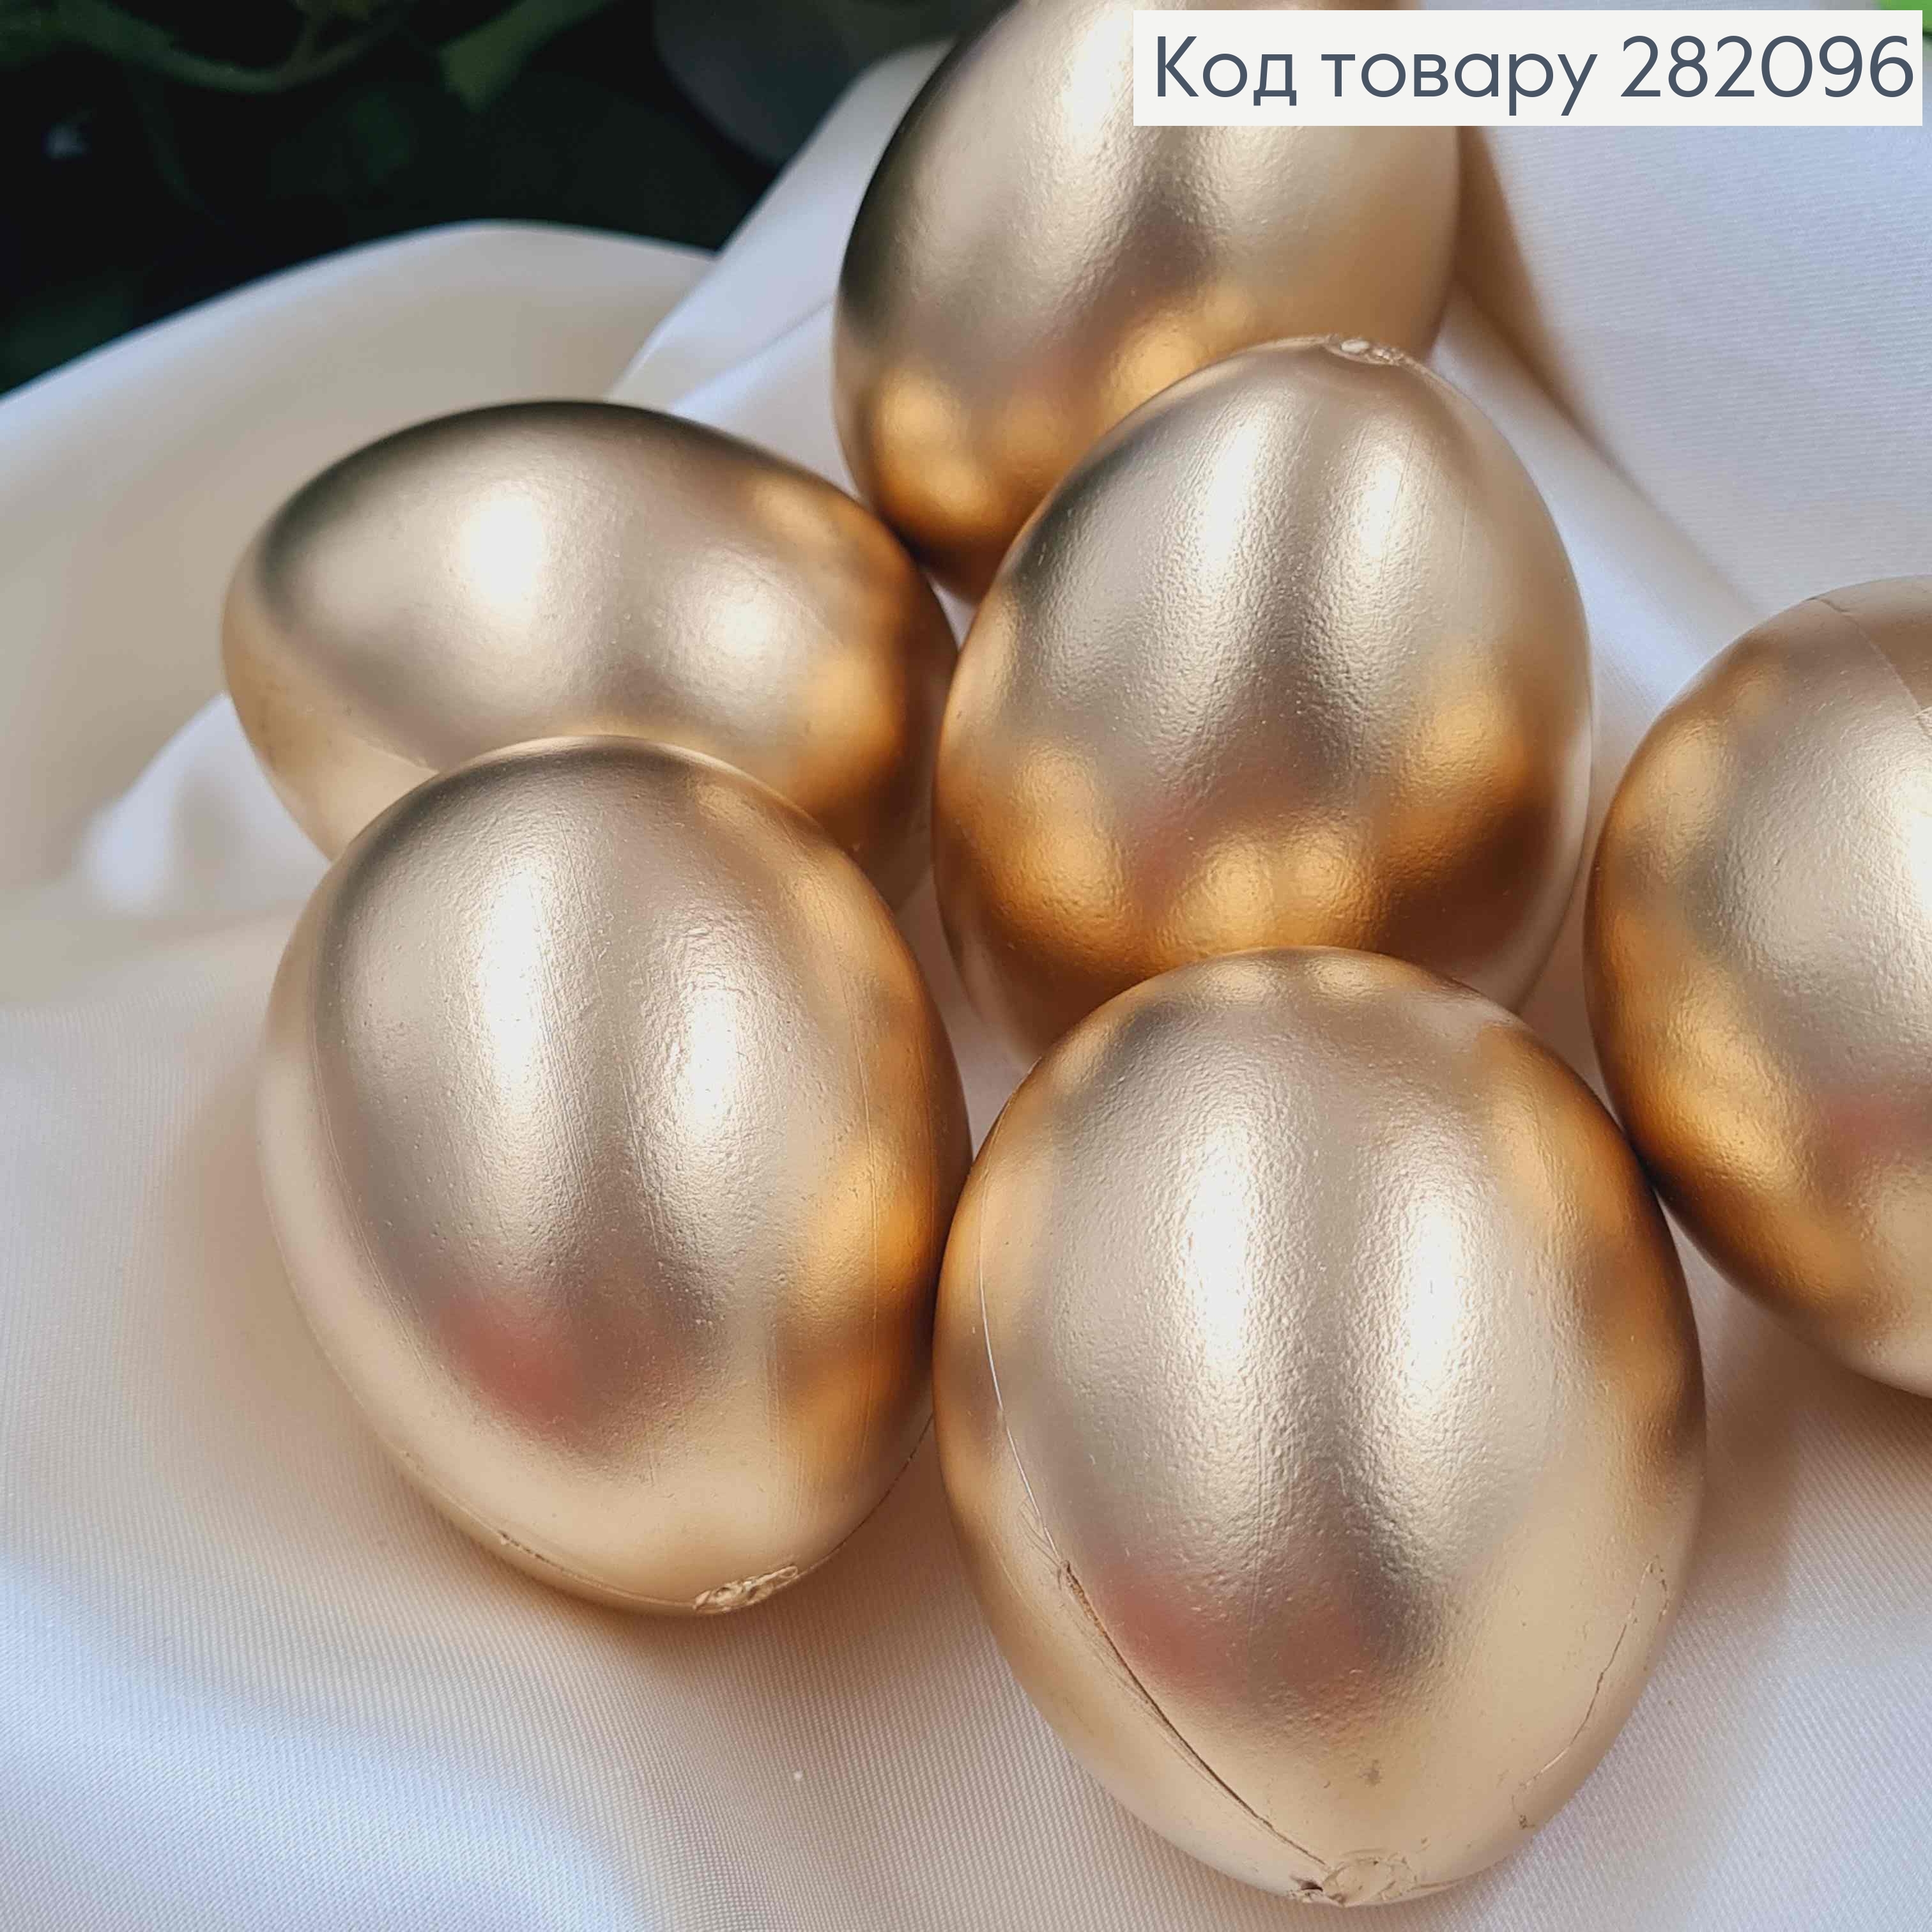 Набір пластикових яєць (6шт) ЗОЛОТОГО кольору, розмір 6*4,5см(як курячі), Україна 282096 фото 2